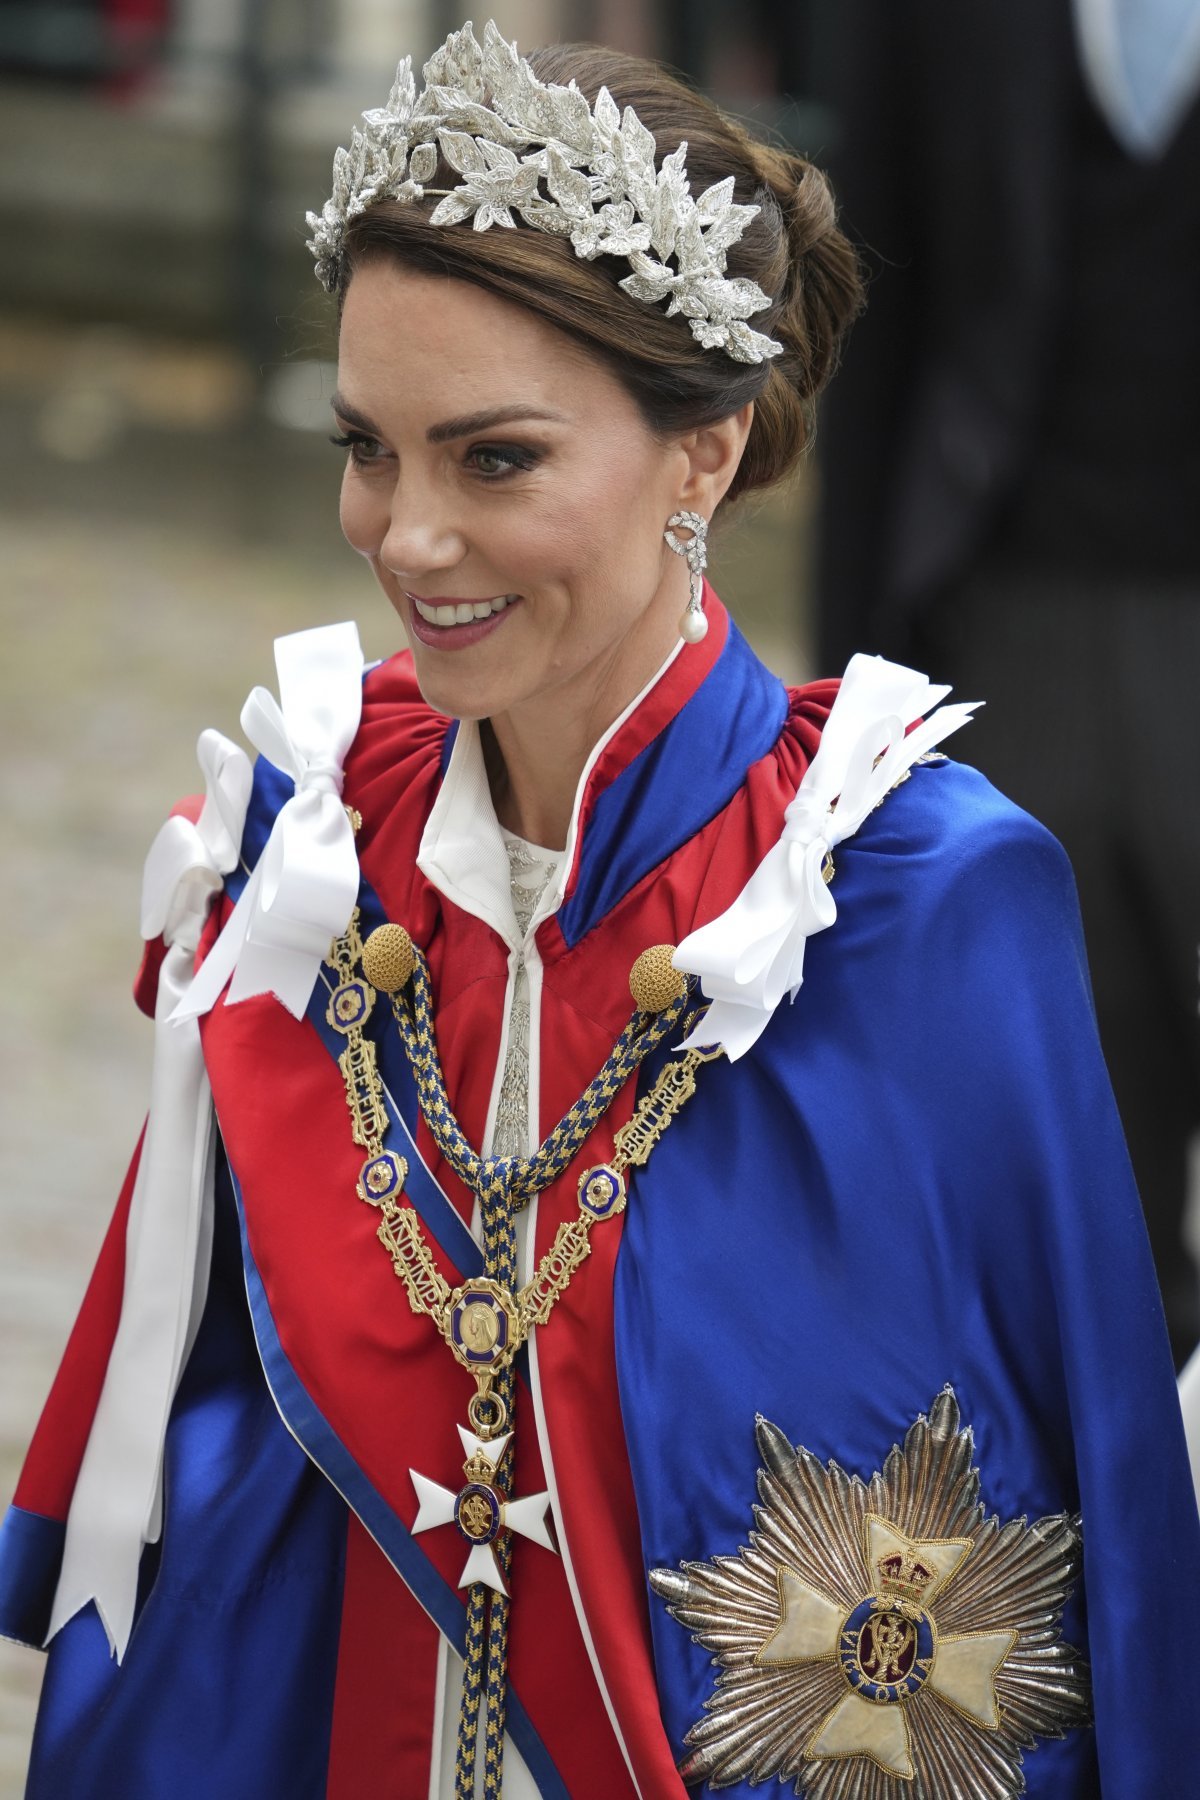 찰스 3세의 장남 윌리엄 왕세자의 부인인 케이트 미들턴 왕세자빈 또한 영국 디자이너 알렉산더 매퀸의 흰색 옷 위에 빨간색과 파란색이 어우러진 공식 예복을 걸쳤다. 런던=AP 뉴시스